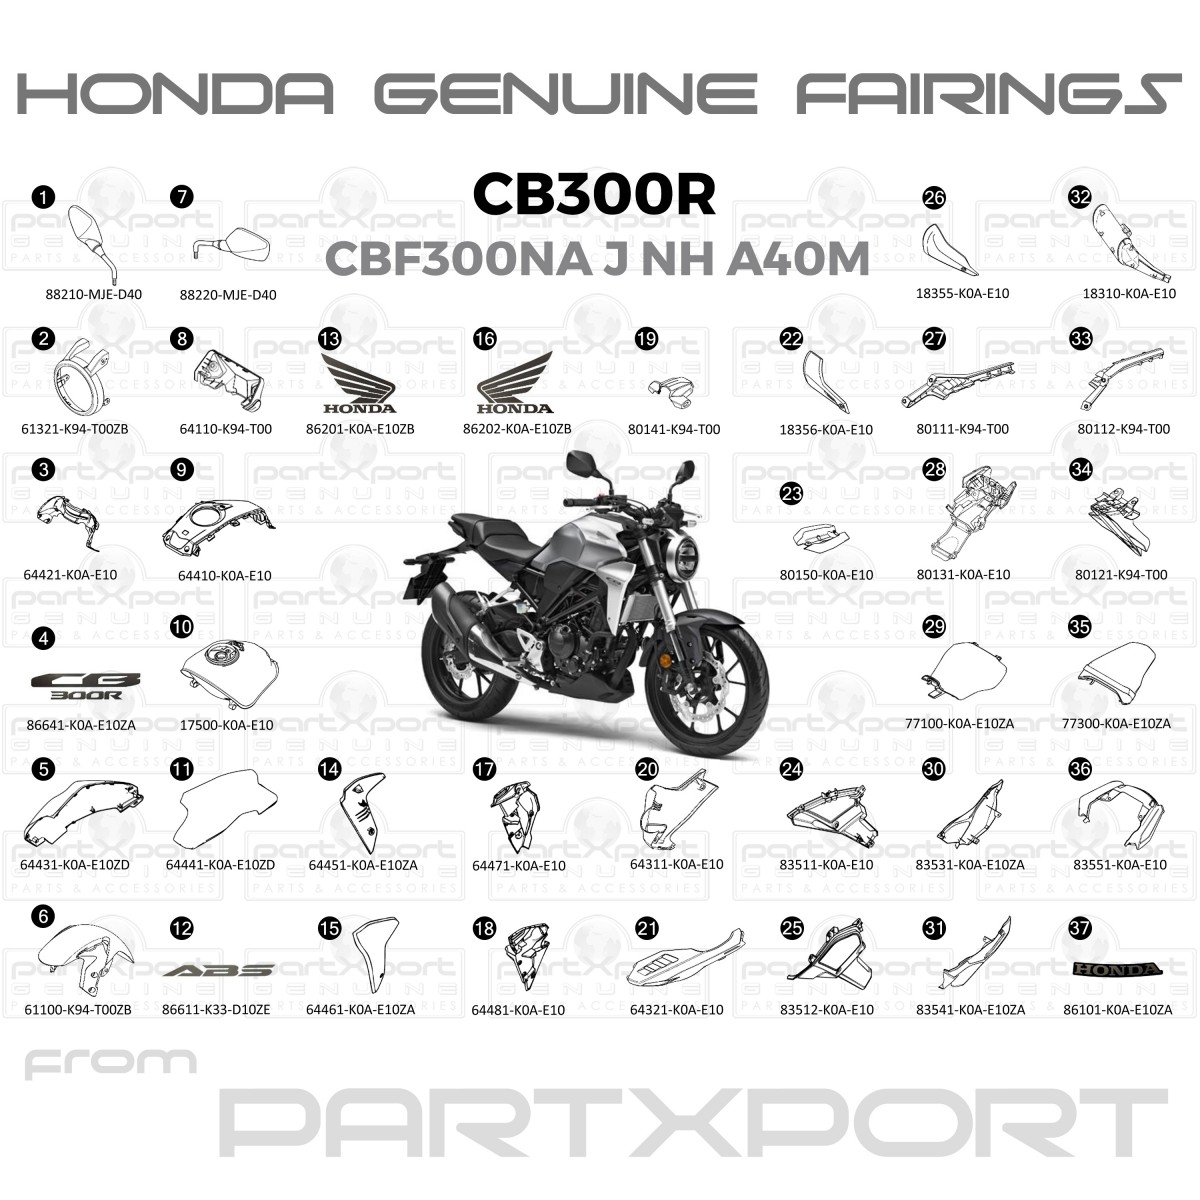 Honda Cbf300na J Th Nh 0m Fairings